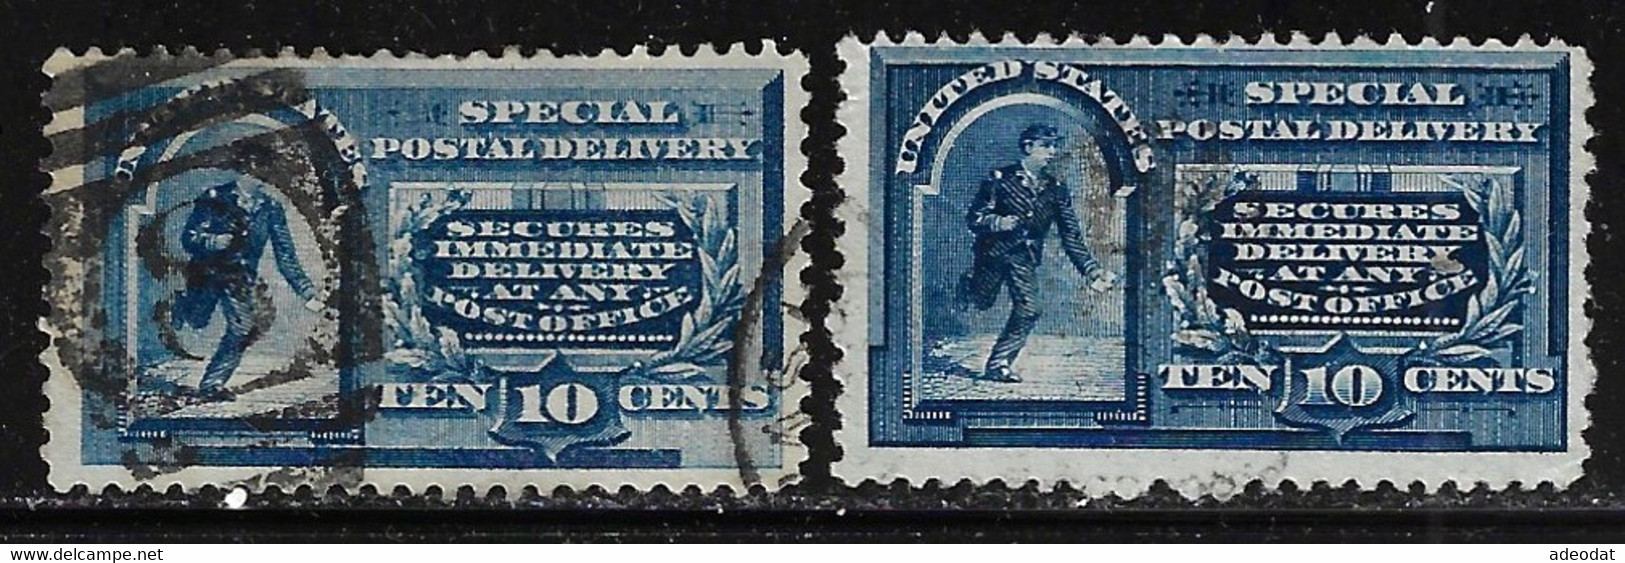 UNITED STATES 1885 SPECIAL DELIVERY SCOTT E1,E4 USED CV US$125. - Espressi & Raccomandate